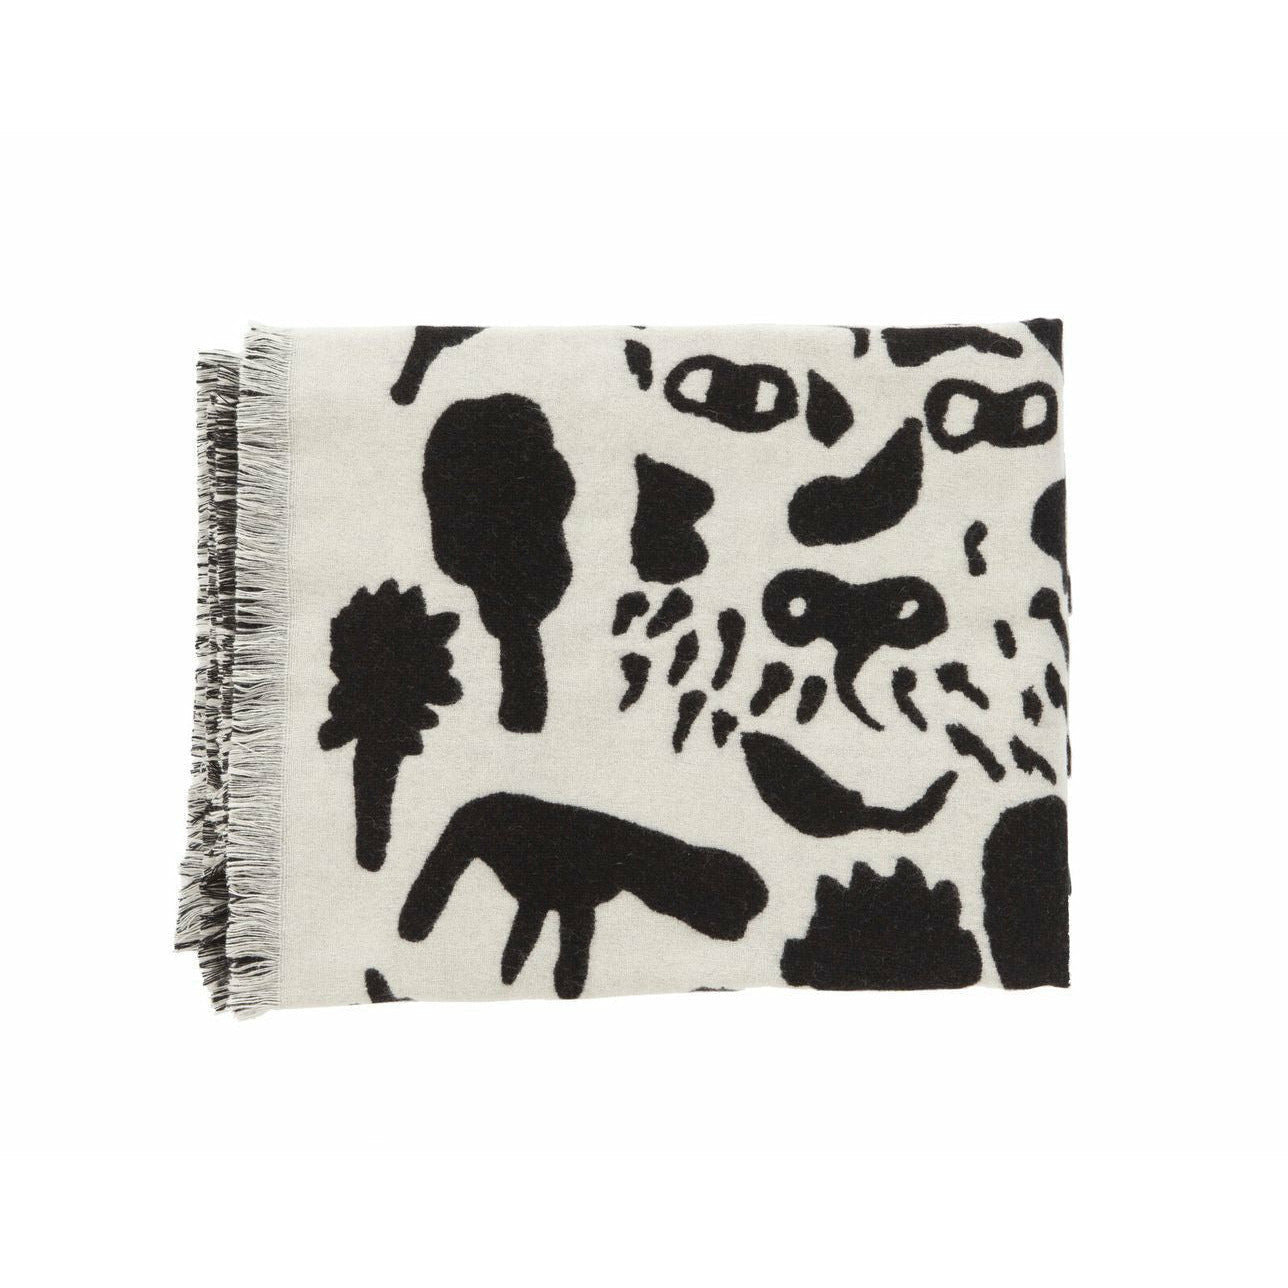 Iittala Oiva Toikka matta Cheetah Black, 180x130 cm